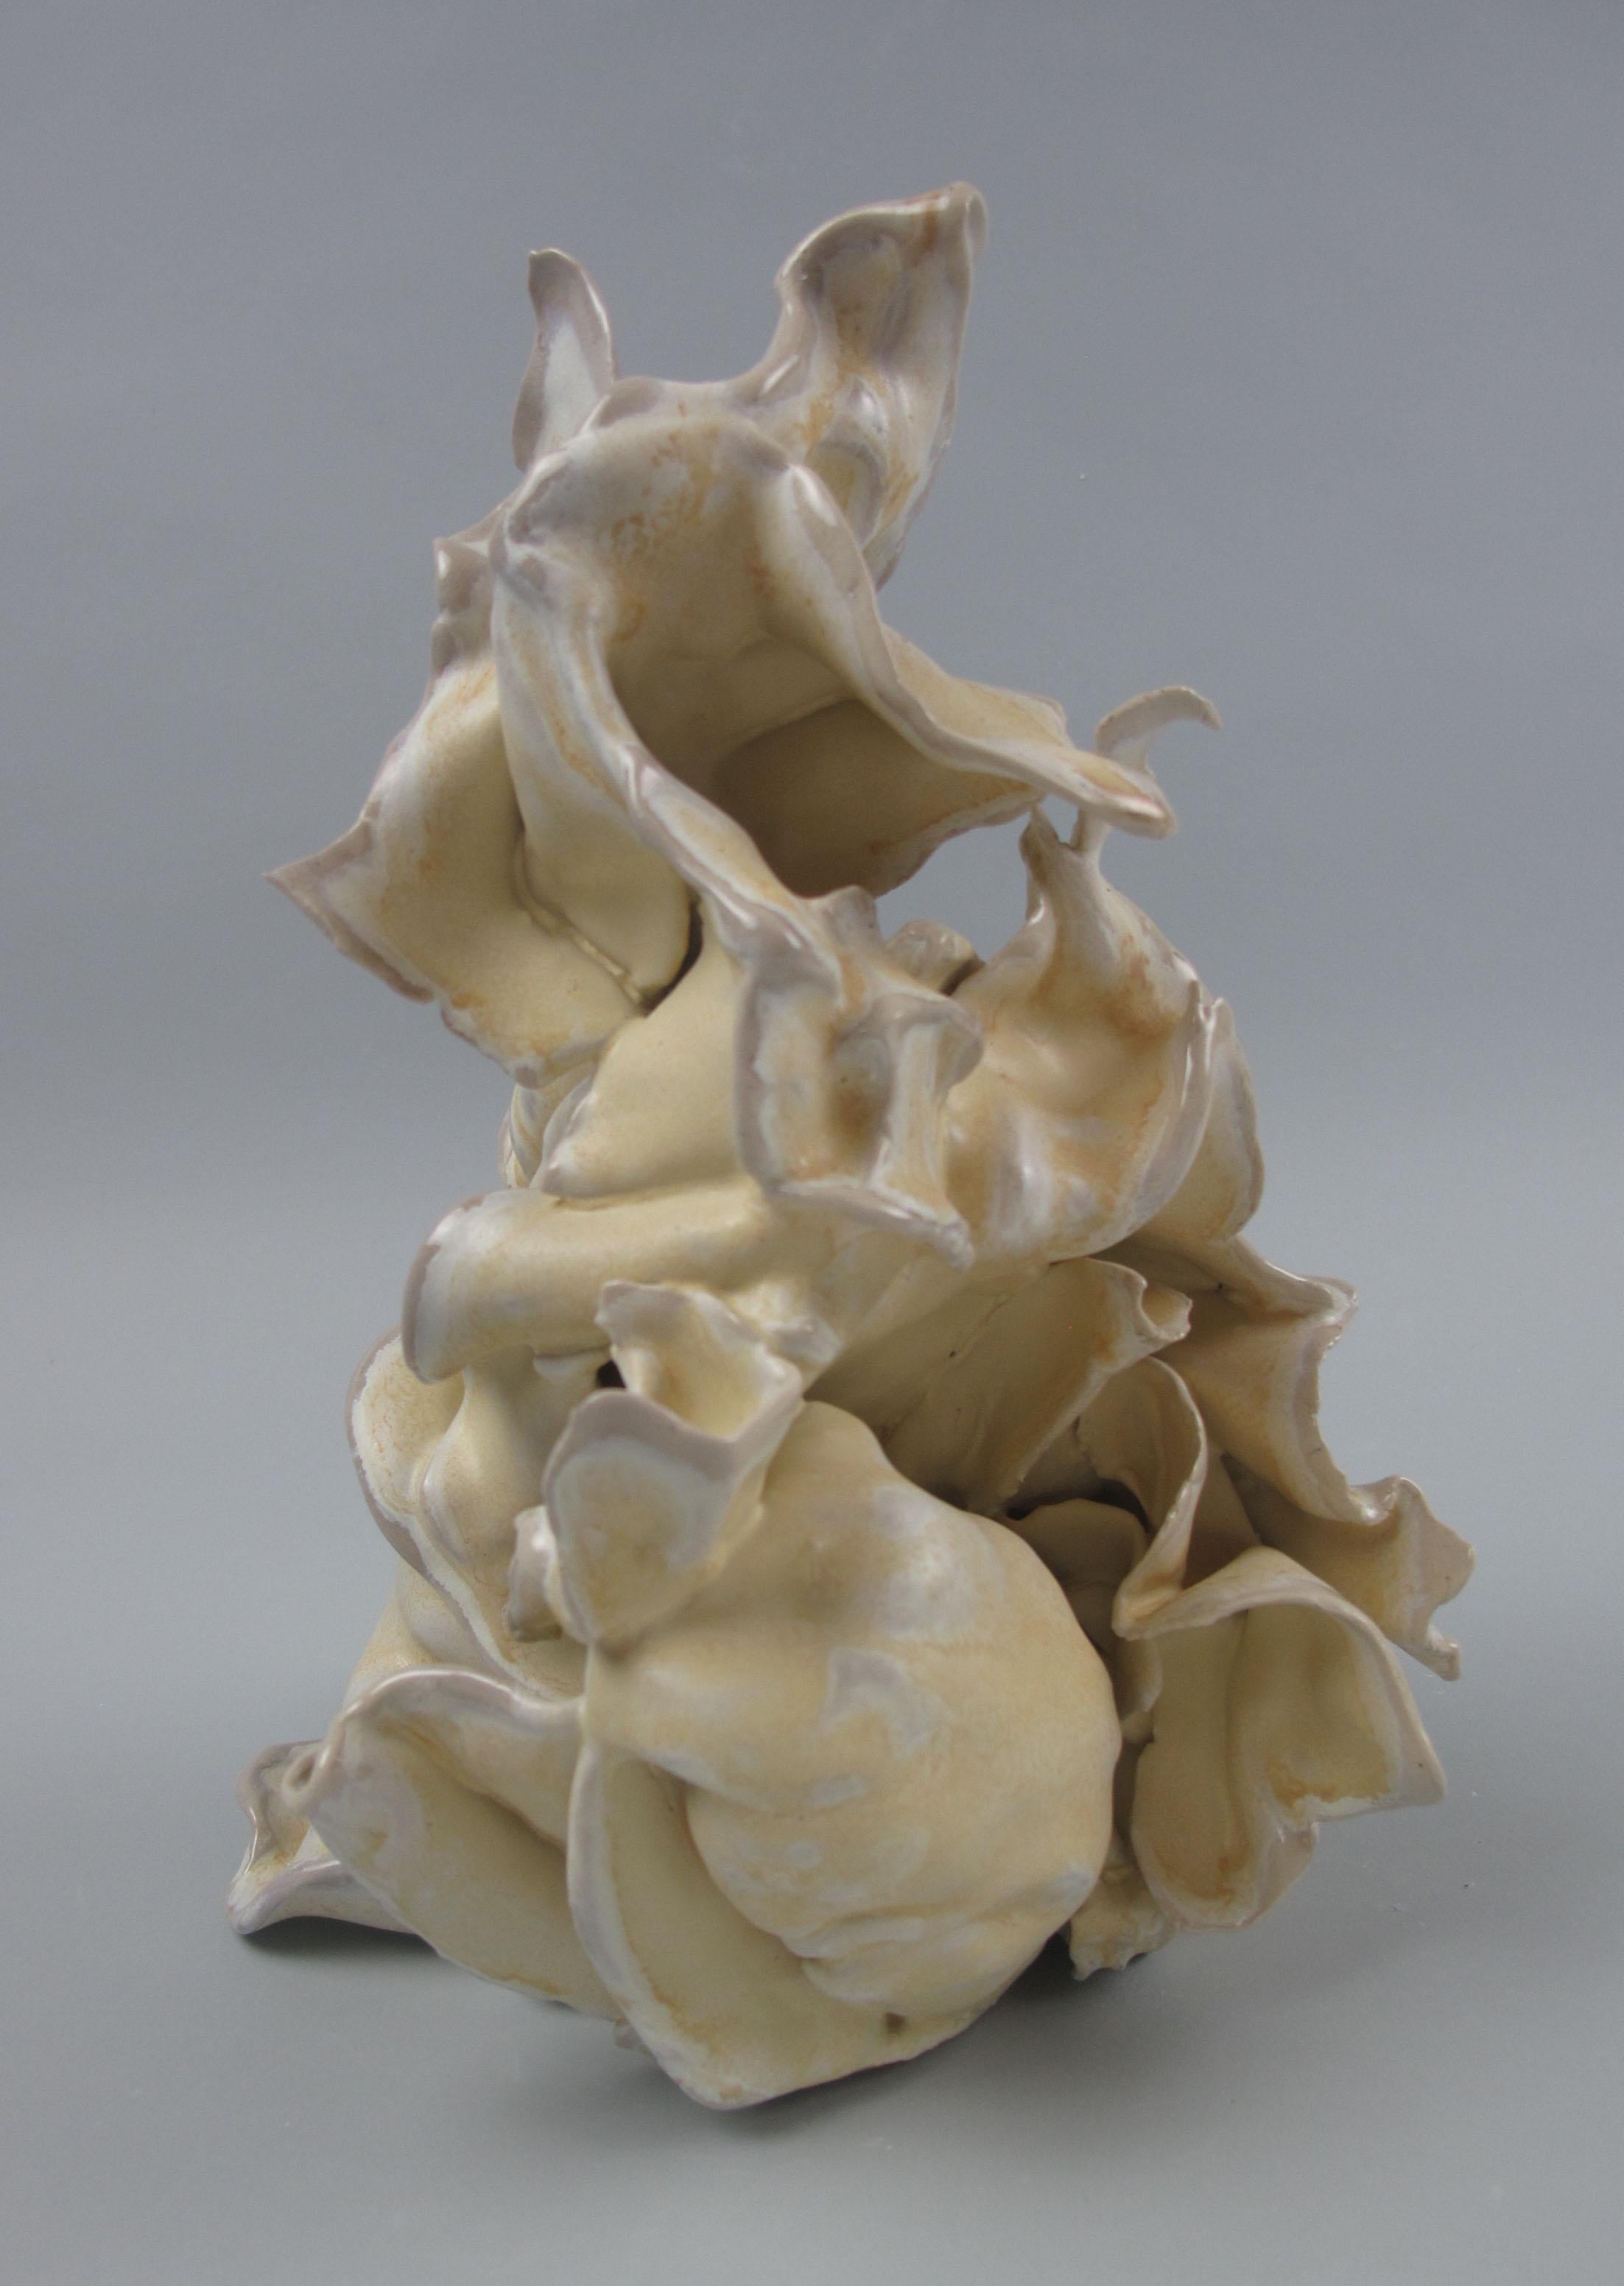 "Grasp", gestural, ceramic, sculpture, yellow, cream, white, tan, stoneware - Sculpture by Sara Fine-Wilson